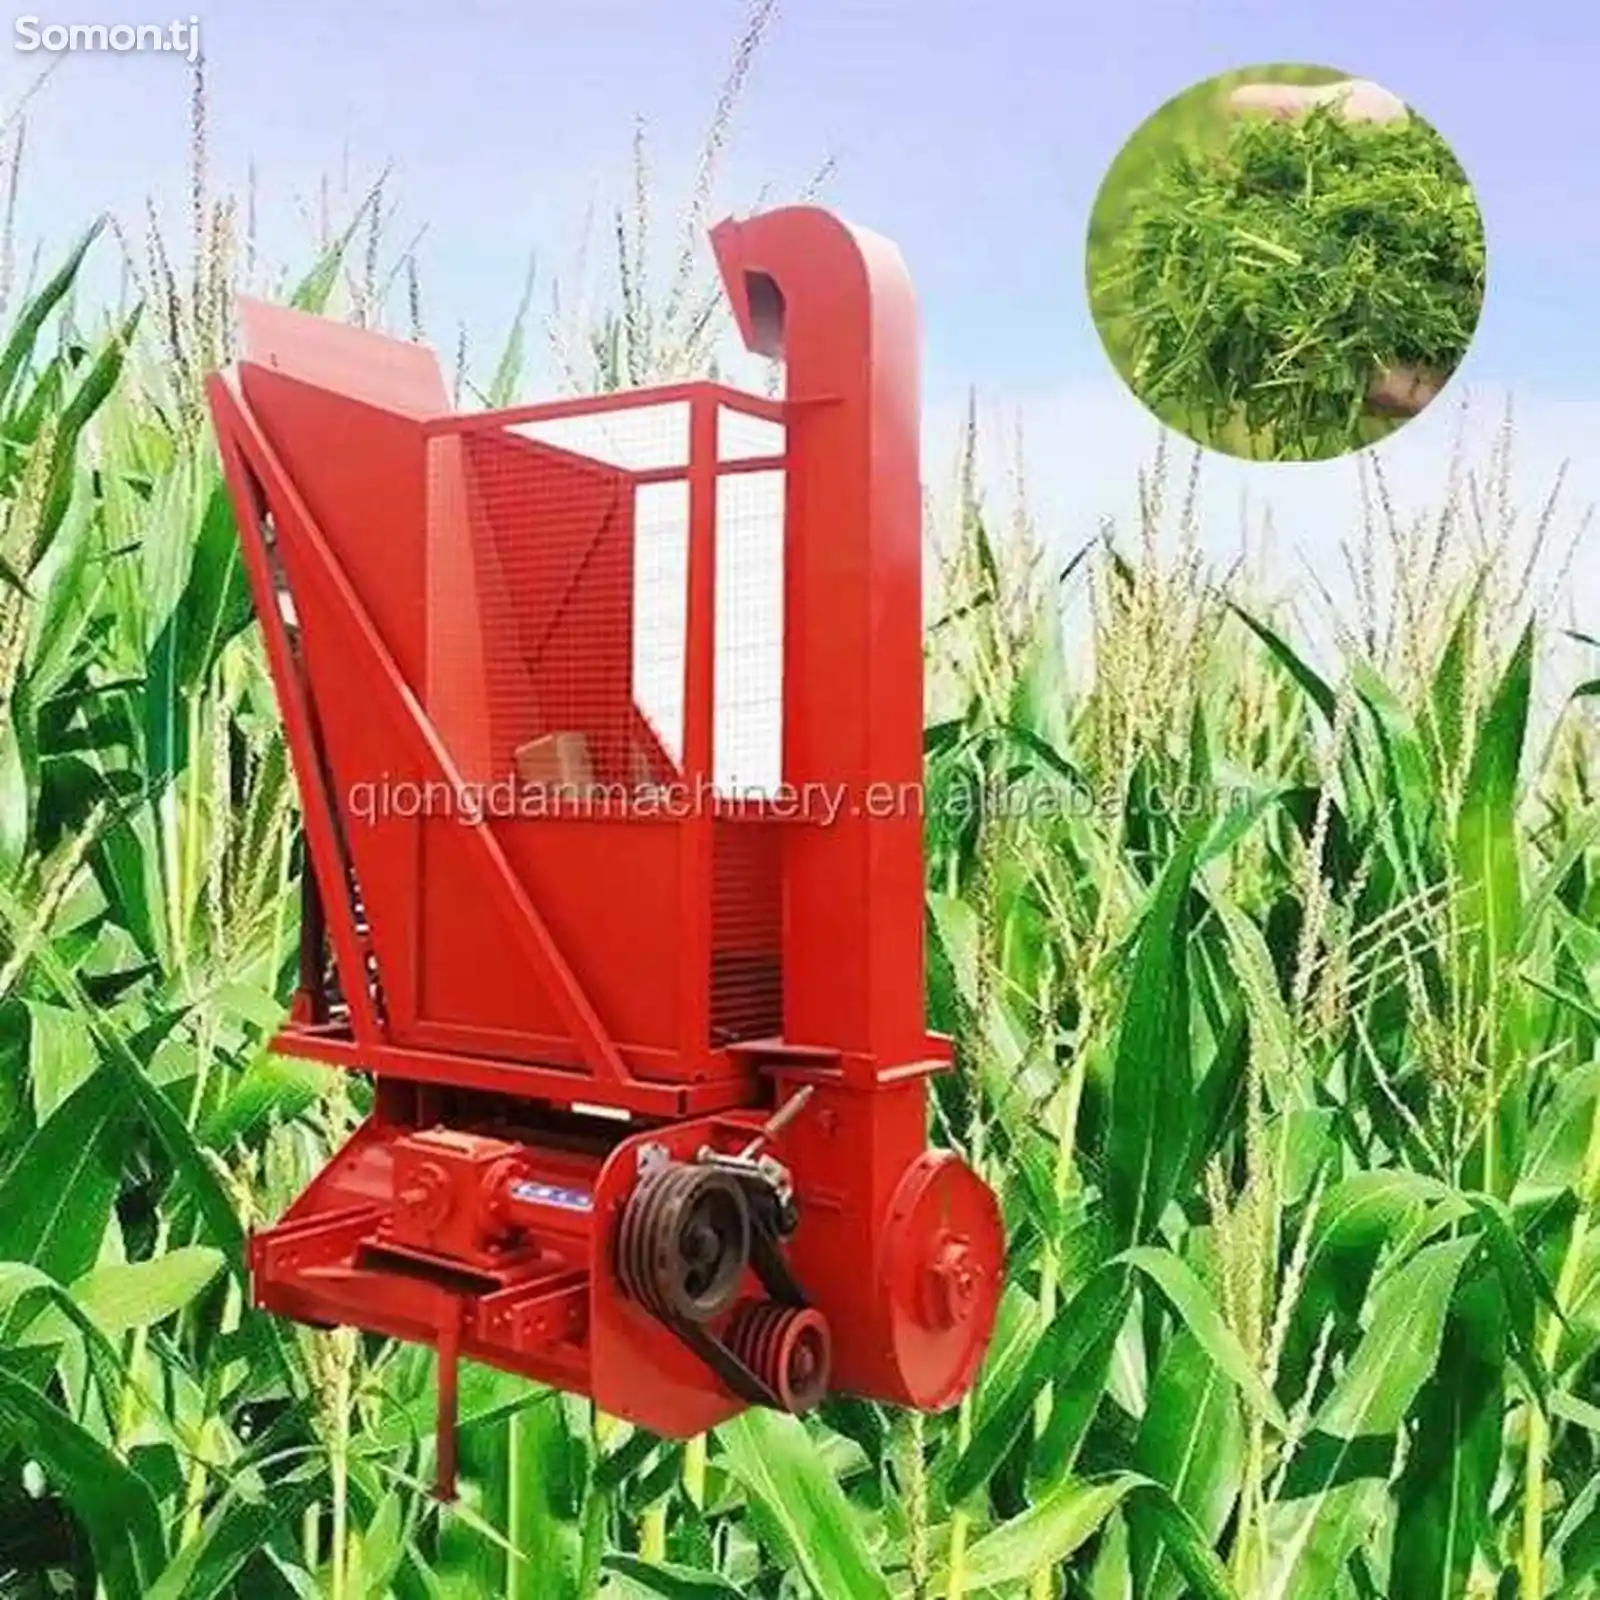 Мини-трактор для измельчителя травы силос на заказ-1